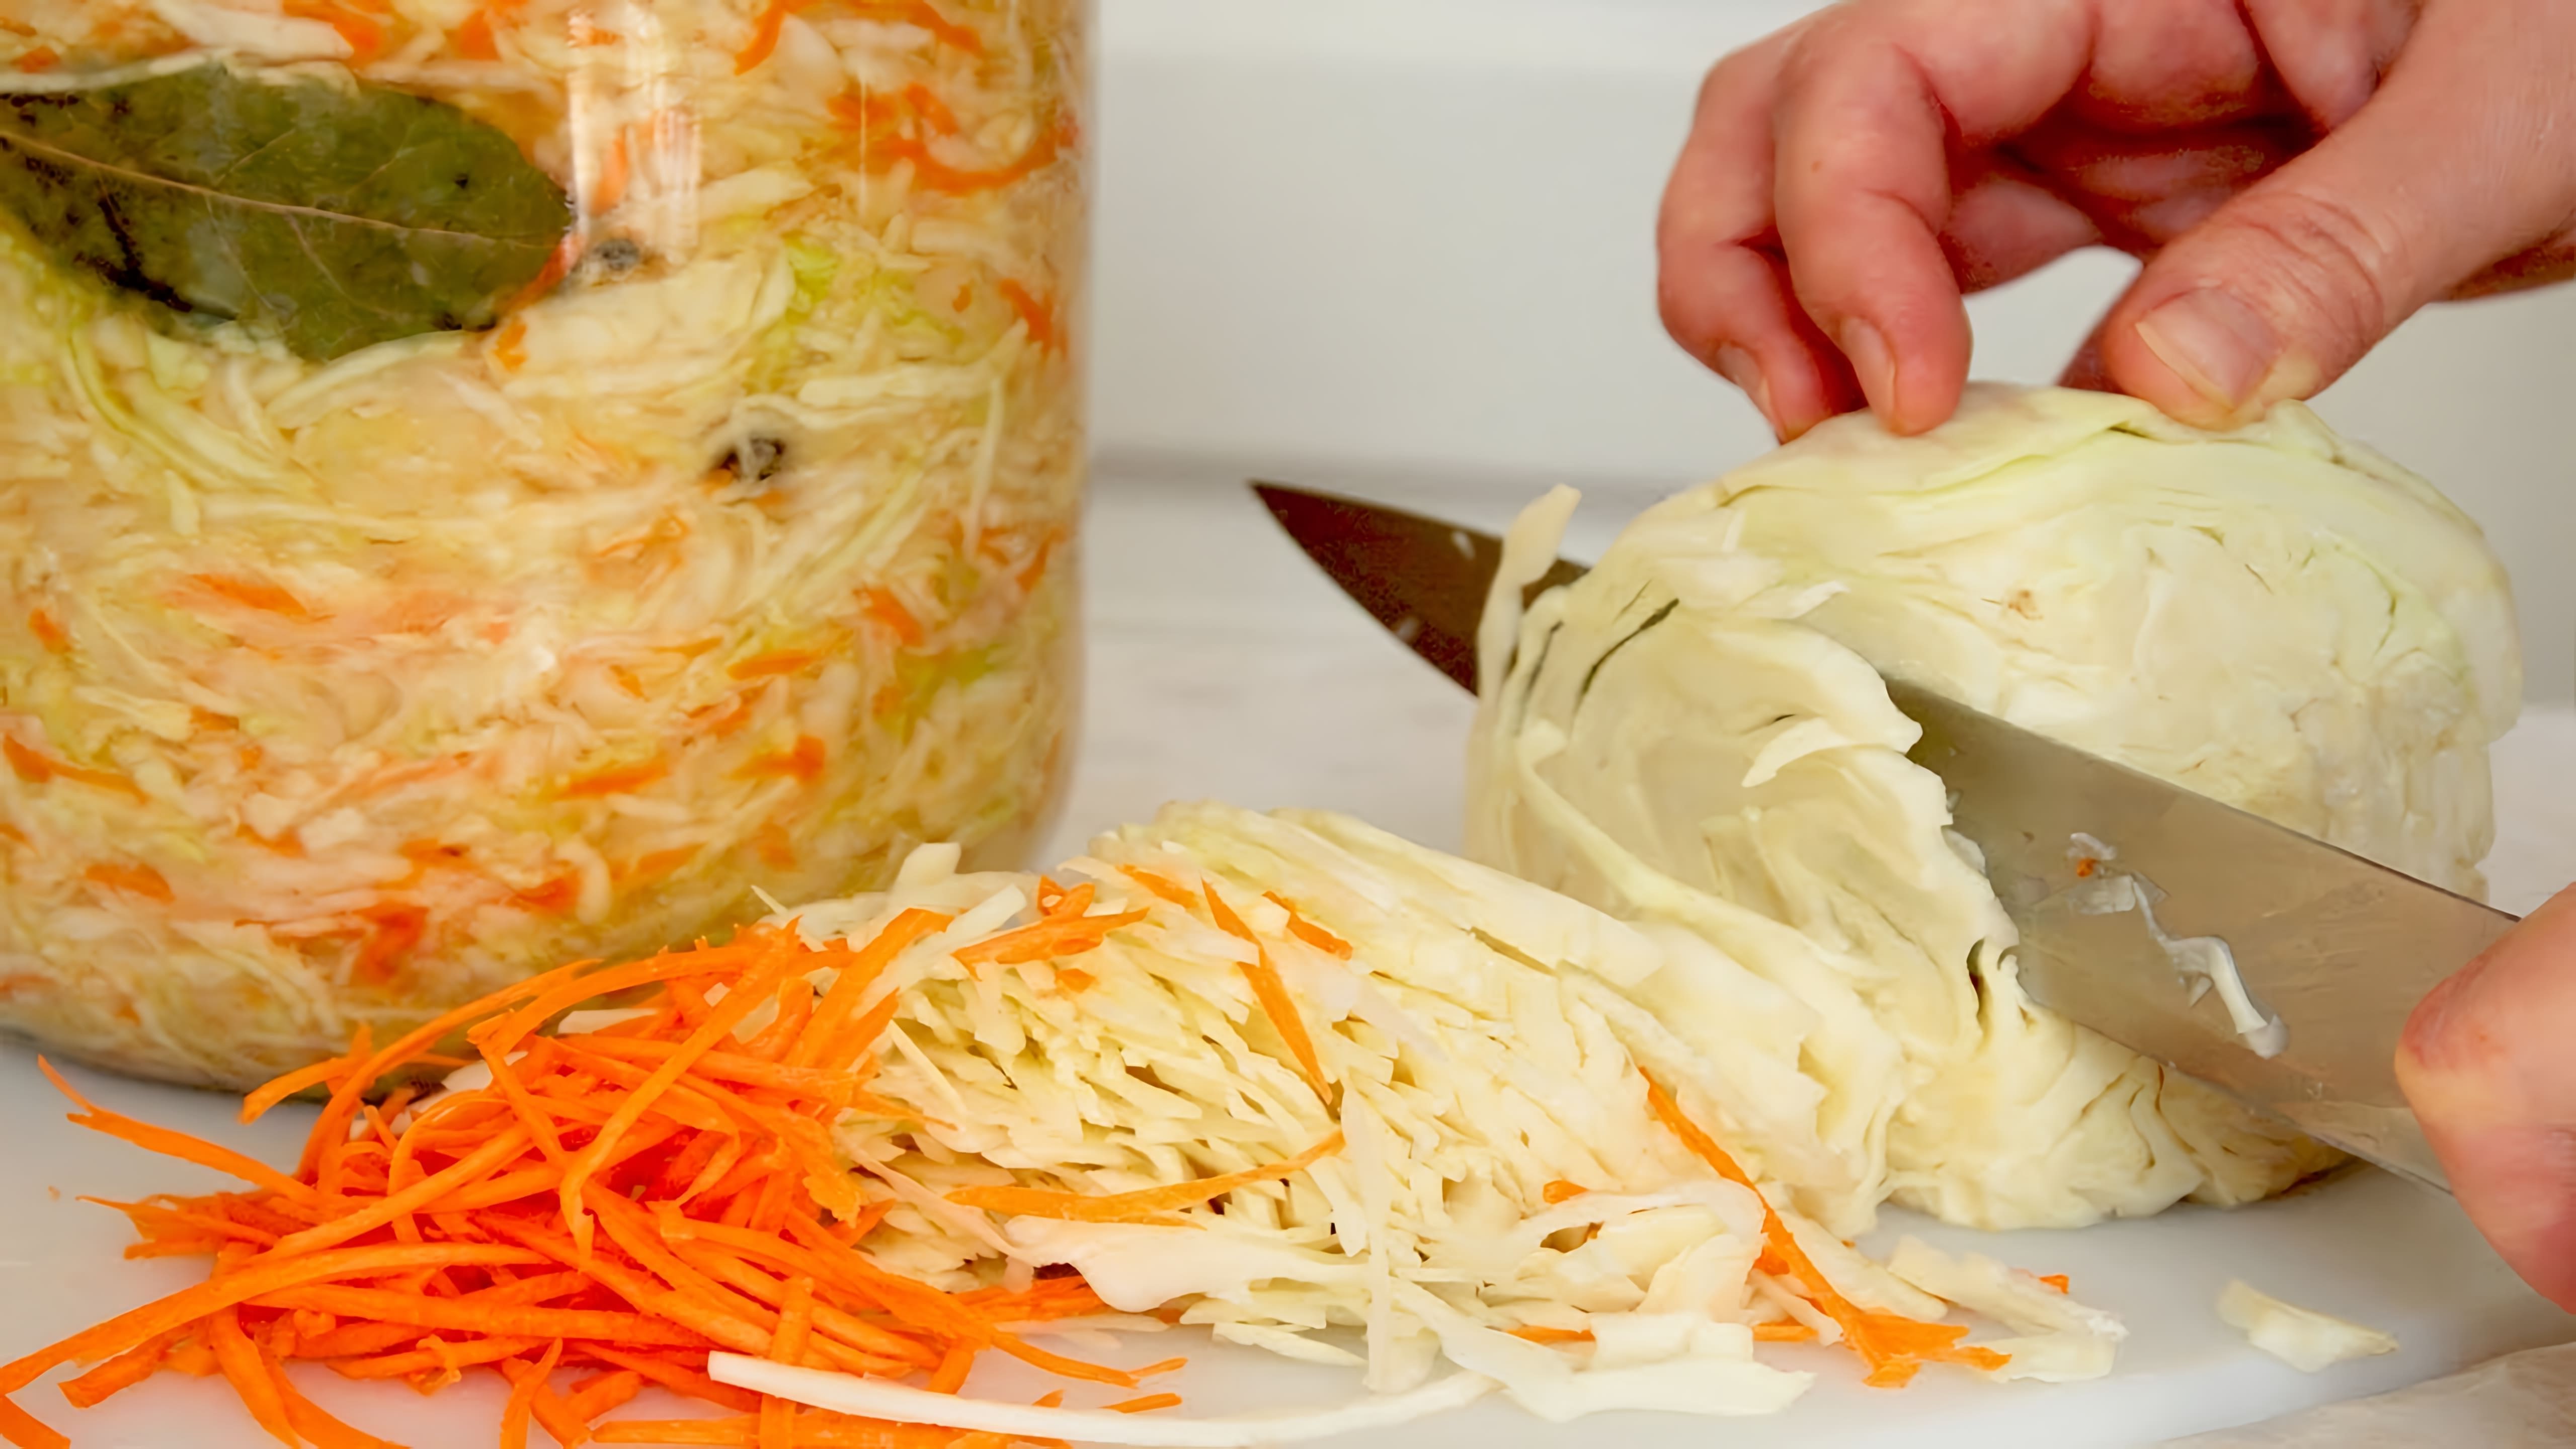 В этом видео демонстрируется процесс приготовления квашеной капусты по простому рецепту